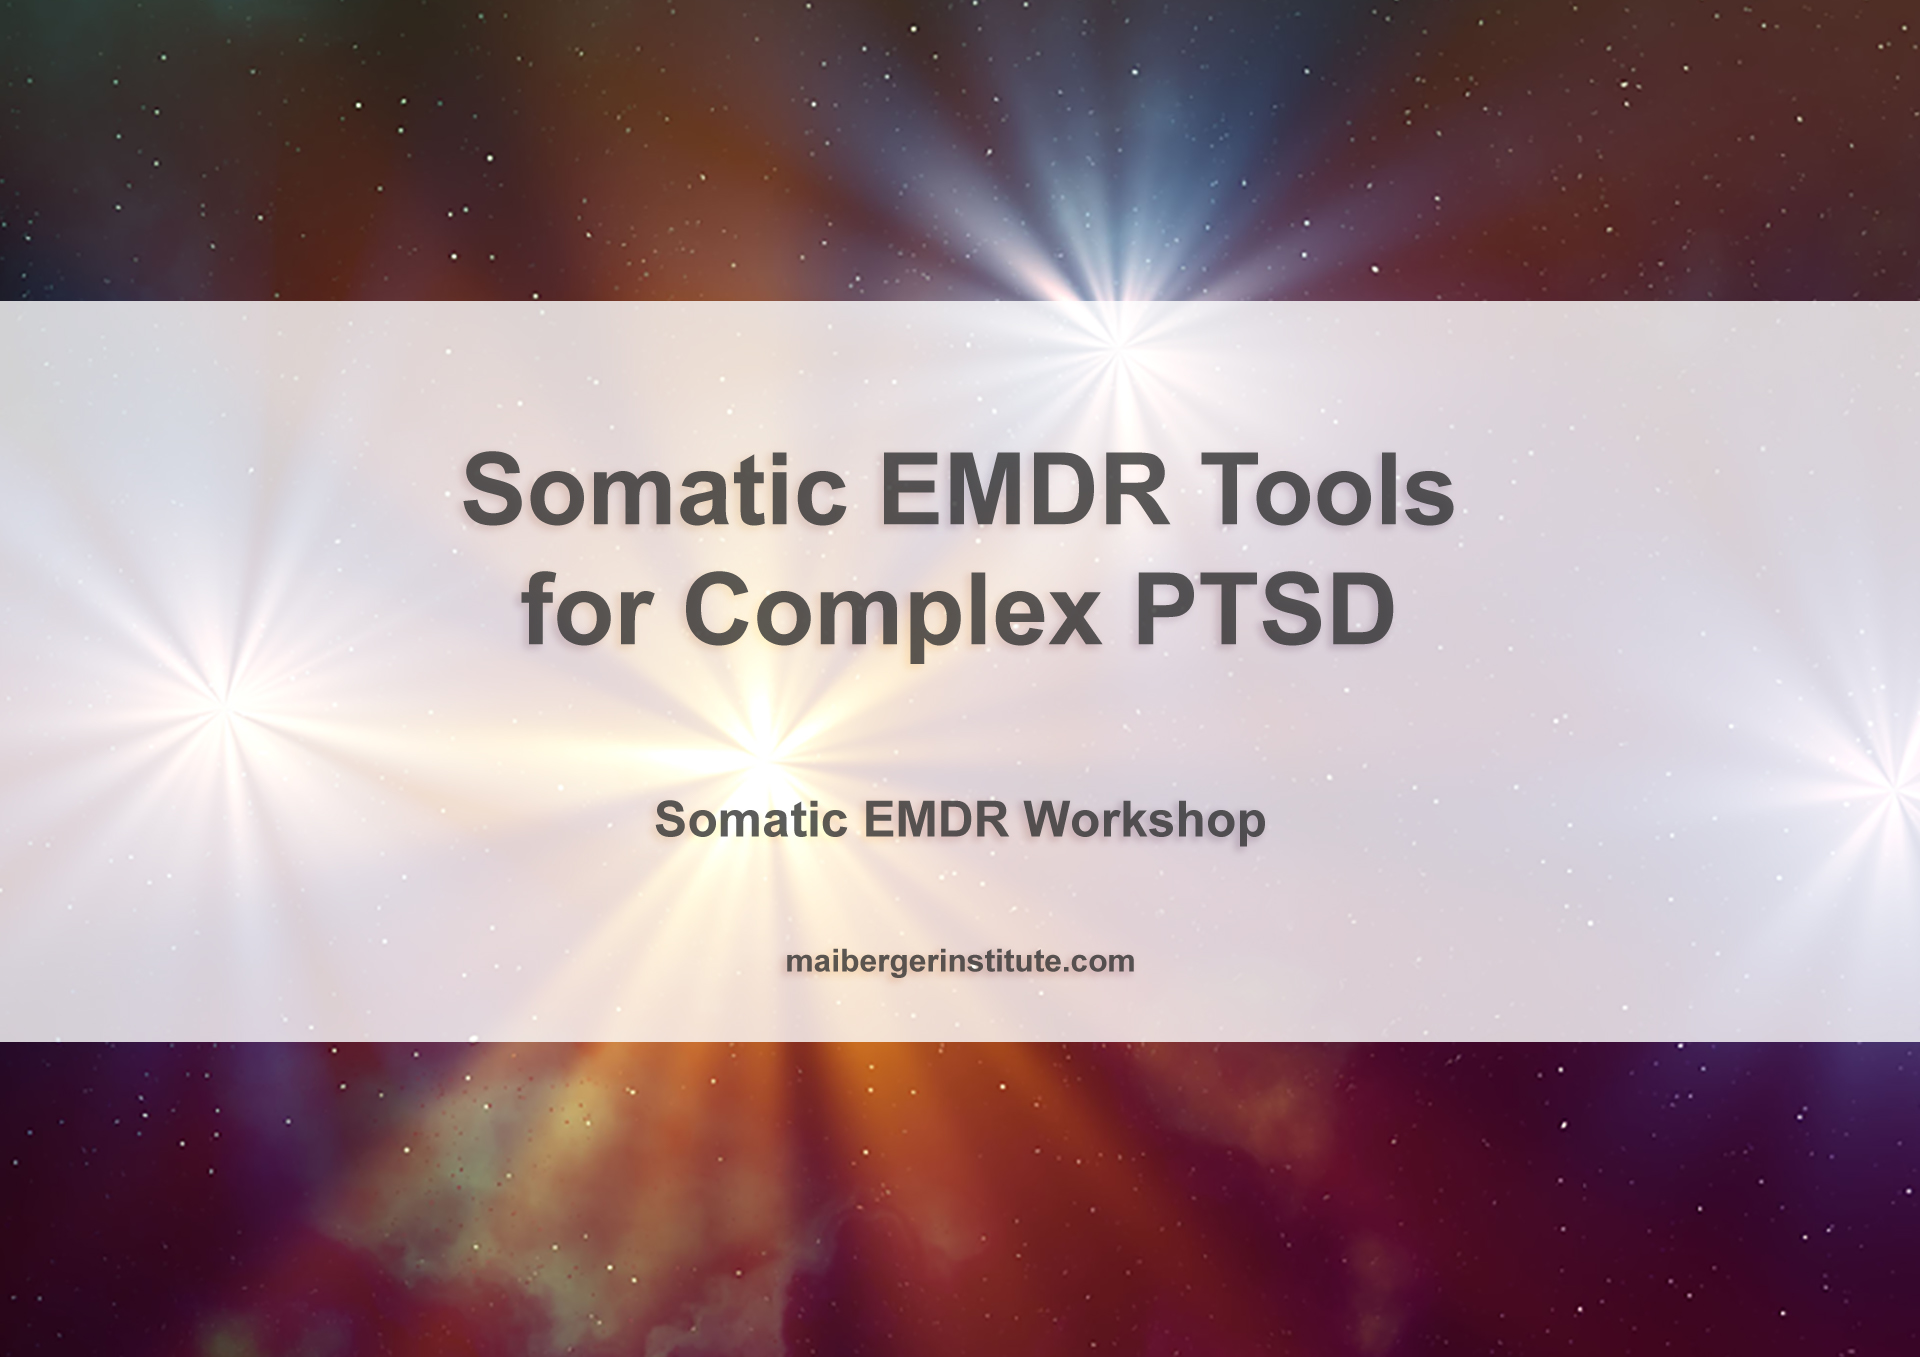 Somatic EMDR Tools for Complex PTSD - Somatic EMDR Workshop - Maiberger Institute